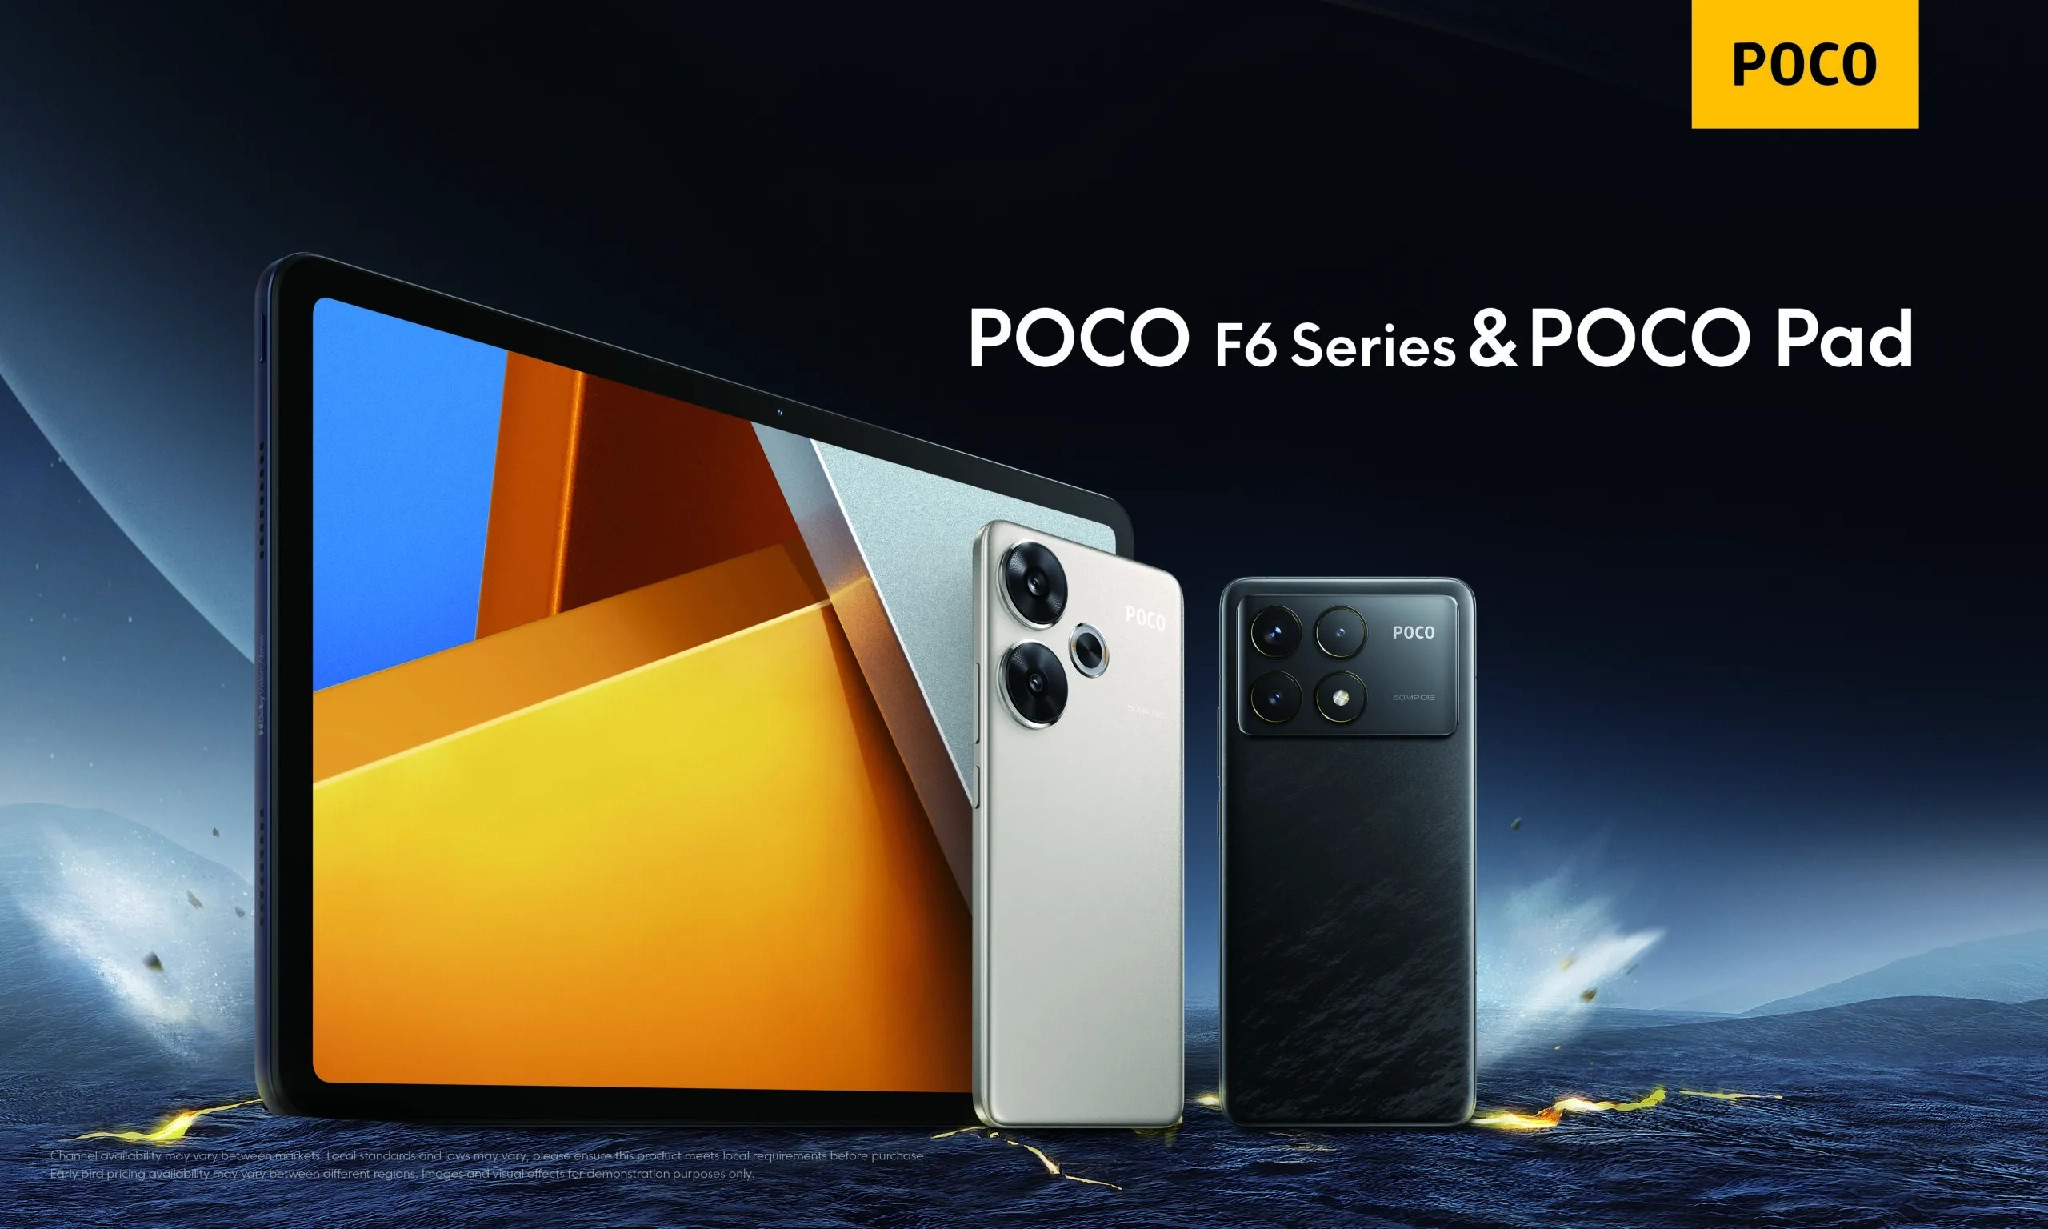 Bộ đôi POCO F6 ra mắt toàn cầu cùng chiếc máy tính bảng POCO đầu tiên, hỗ trợ làm việc hiệu quả, giải trí đỉnh cao